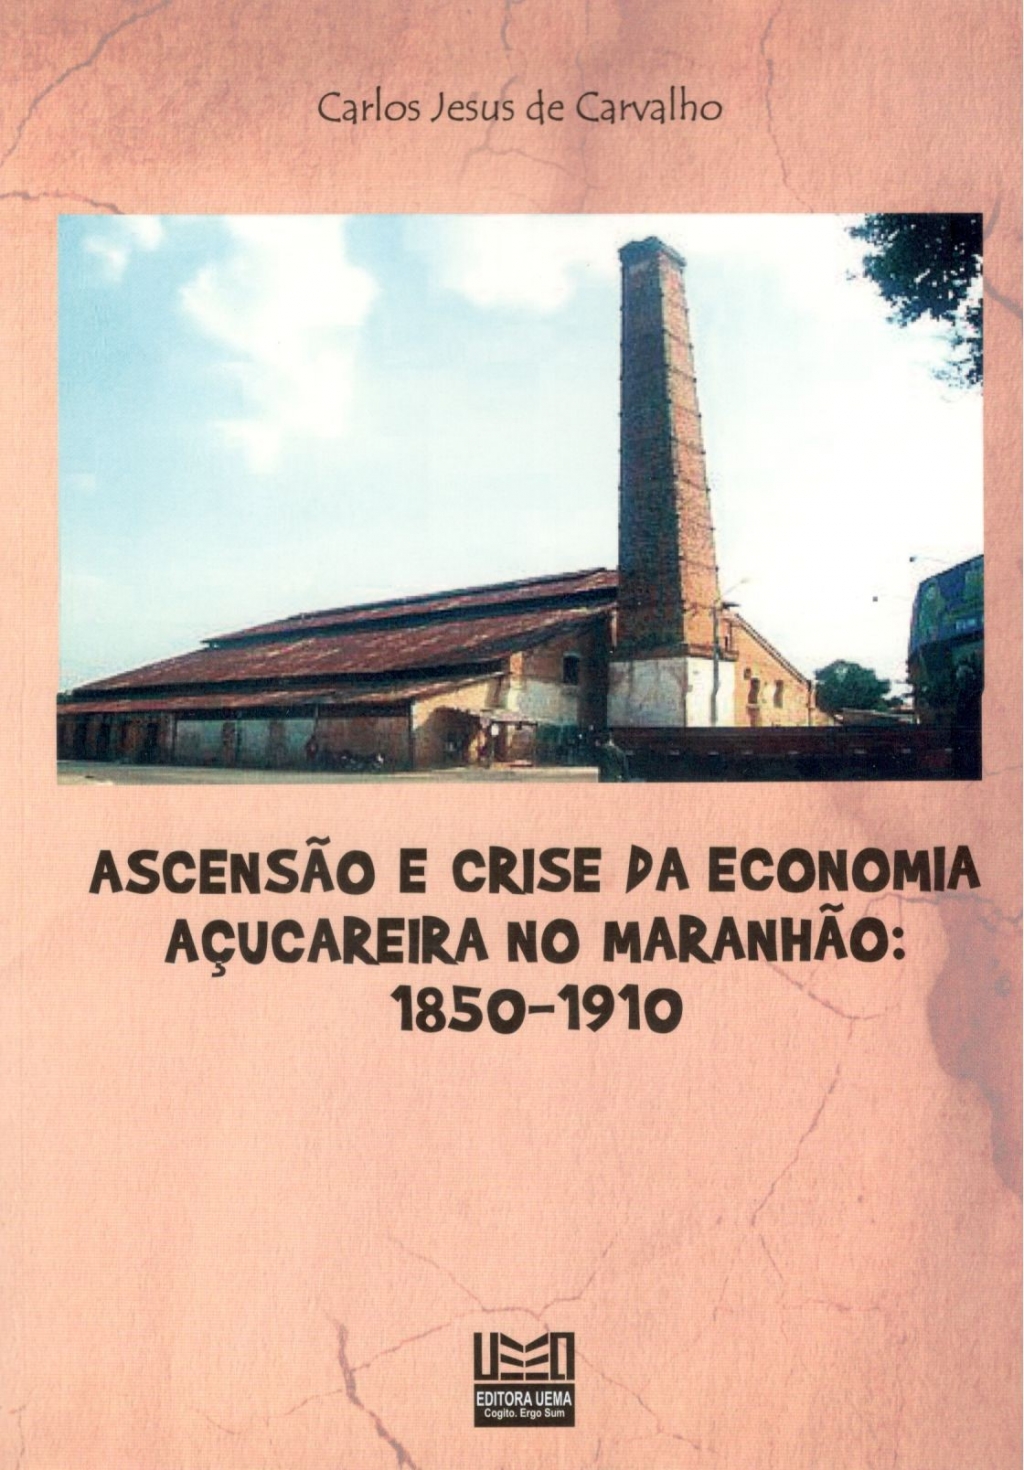 Ascensão e crise da economia açucareira no Maranhão: 1850-1910 (DISPONÍVEL PARA DOWNLOAD)